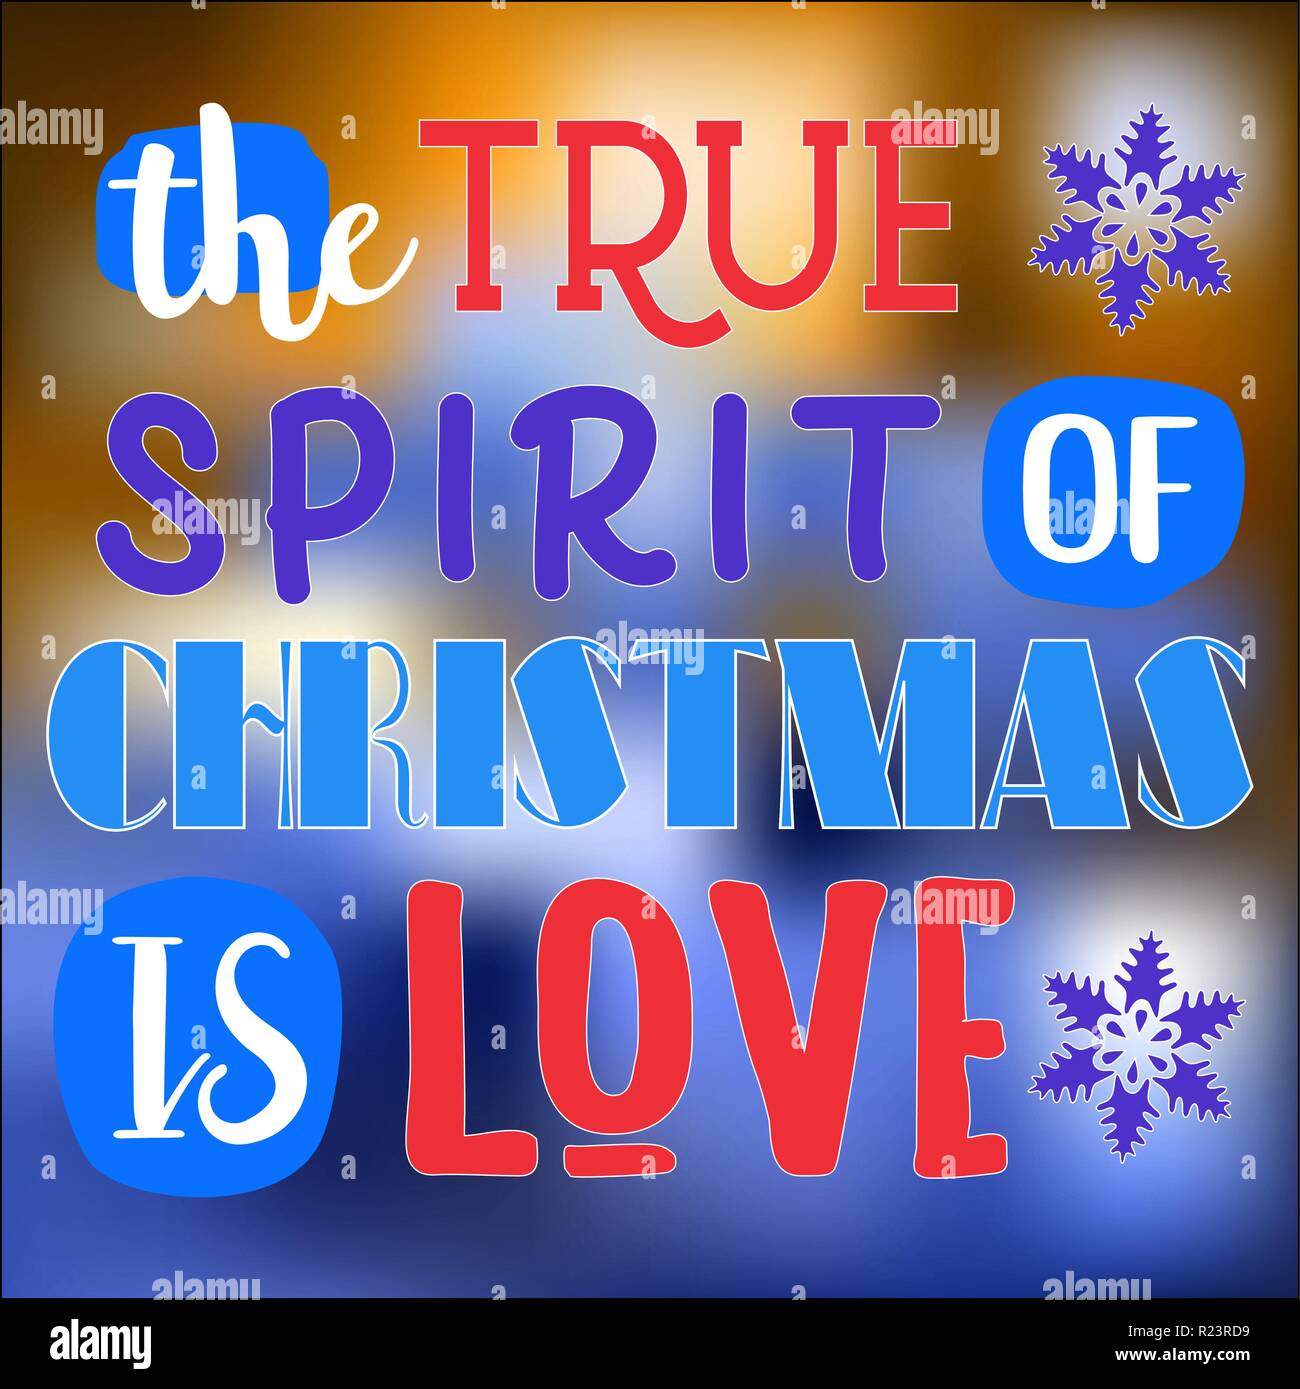 Le véritable esprit de Noël, c'est l'amour. Citation de Noël. Typographie pour des cartes de Noël, de conception, d'impression de l'affiche Illustration de Vecteur